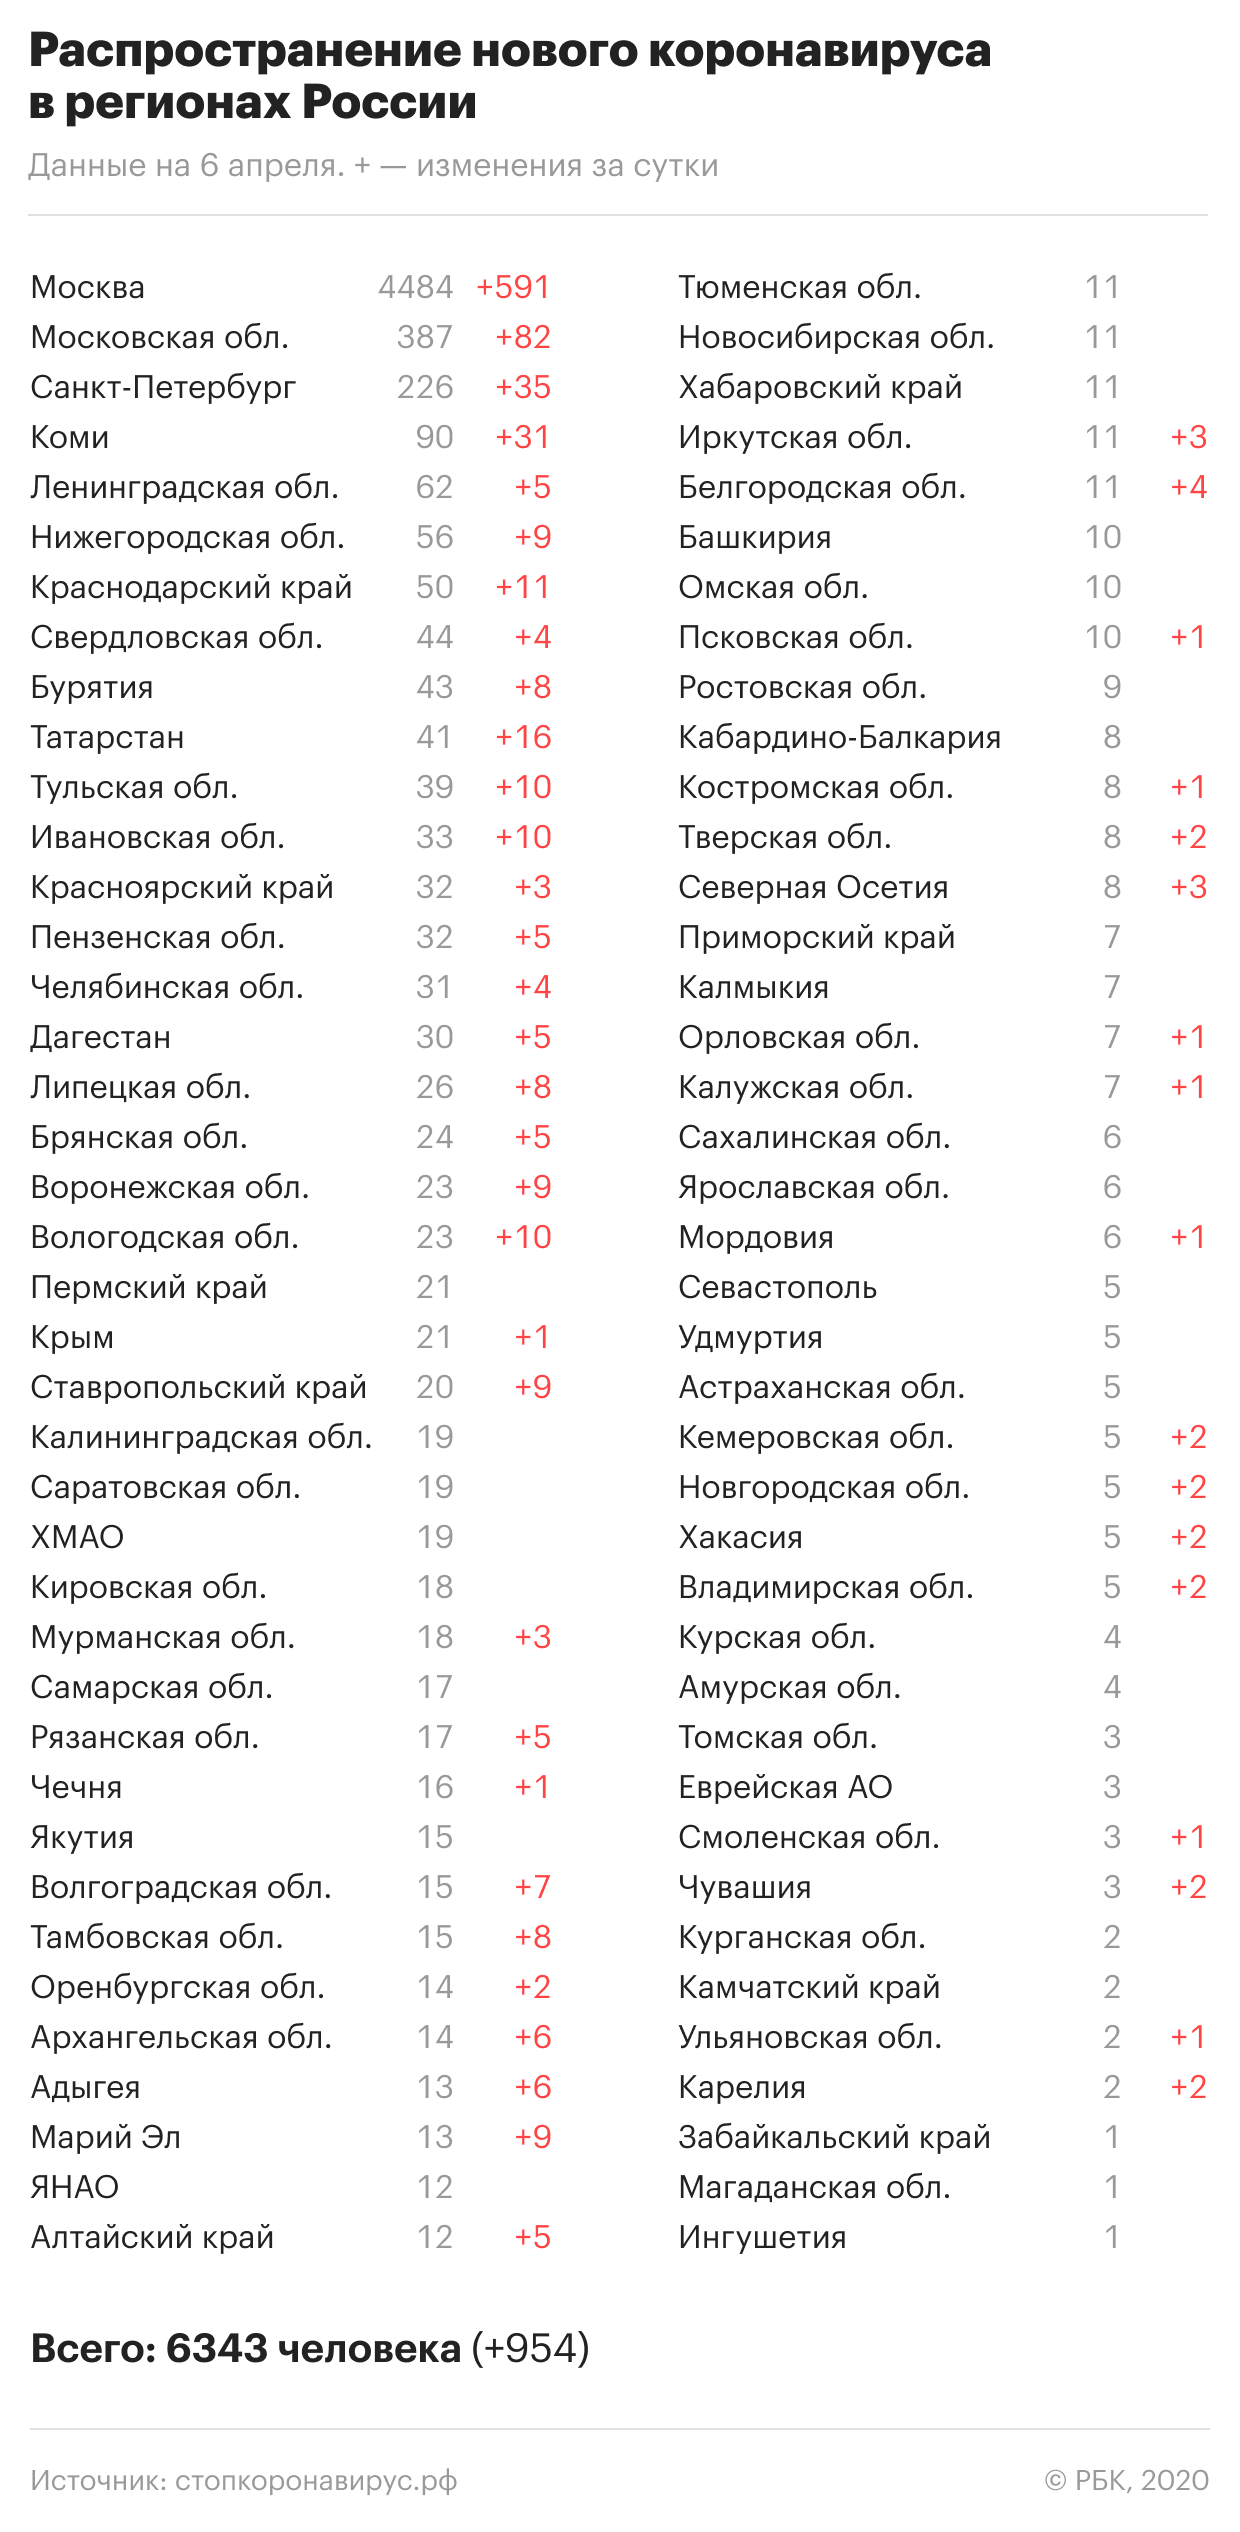 Коронавирус в России — где и сколько заболевших на сегодня, последние новости на 7 апреля 2020: Через 14 дней прогнозируется пиковая заболеваемость, главное за день